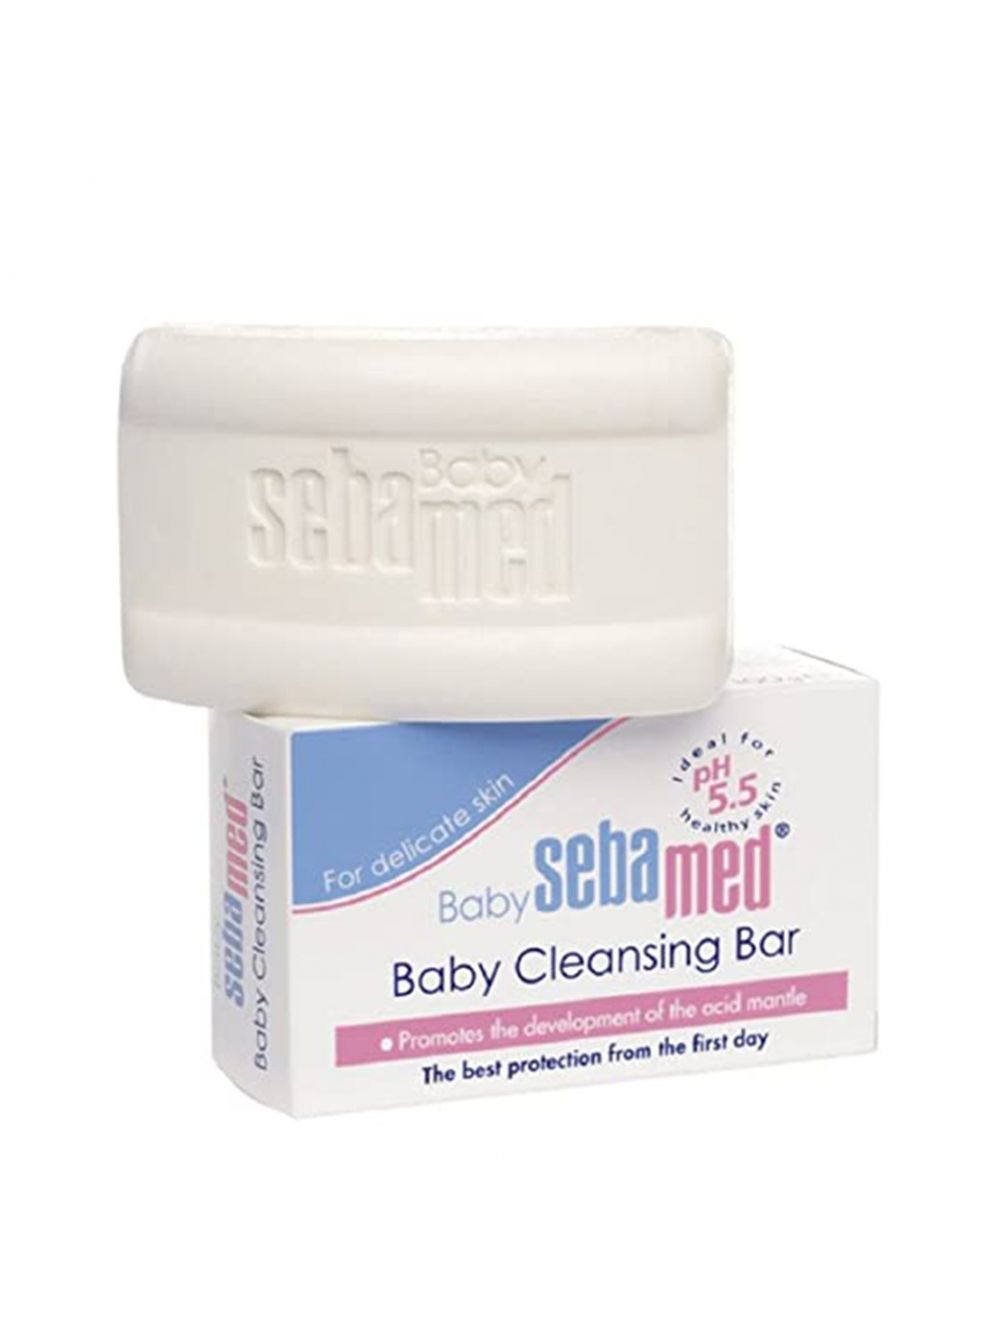 Sebamed Baby Cleansing Bar Ph5.5 (150gm) - Niram